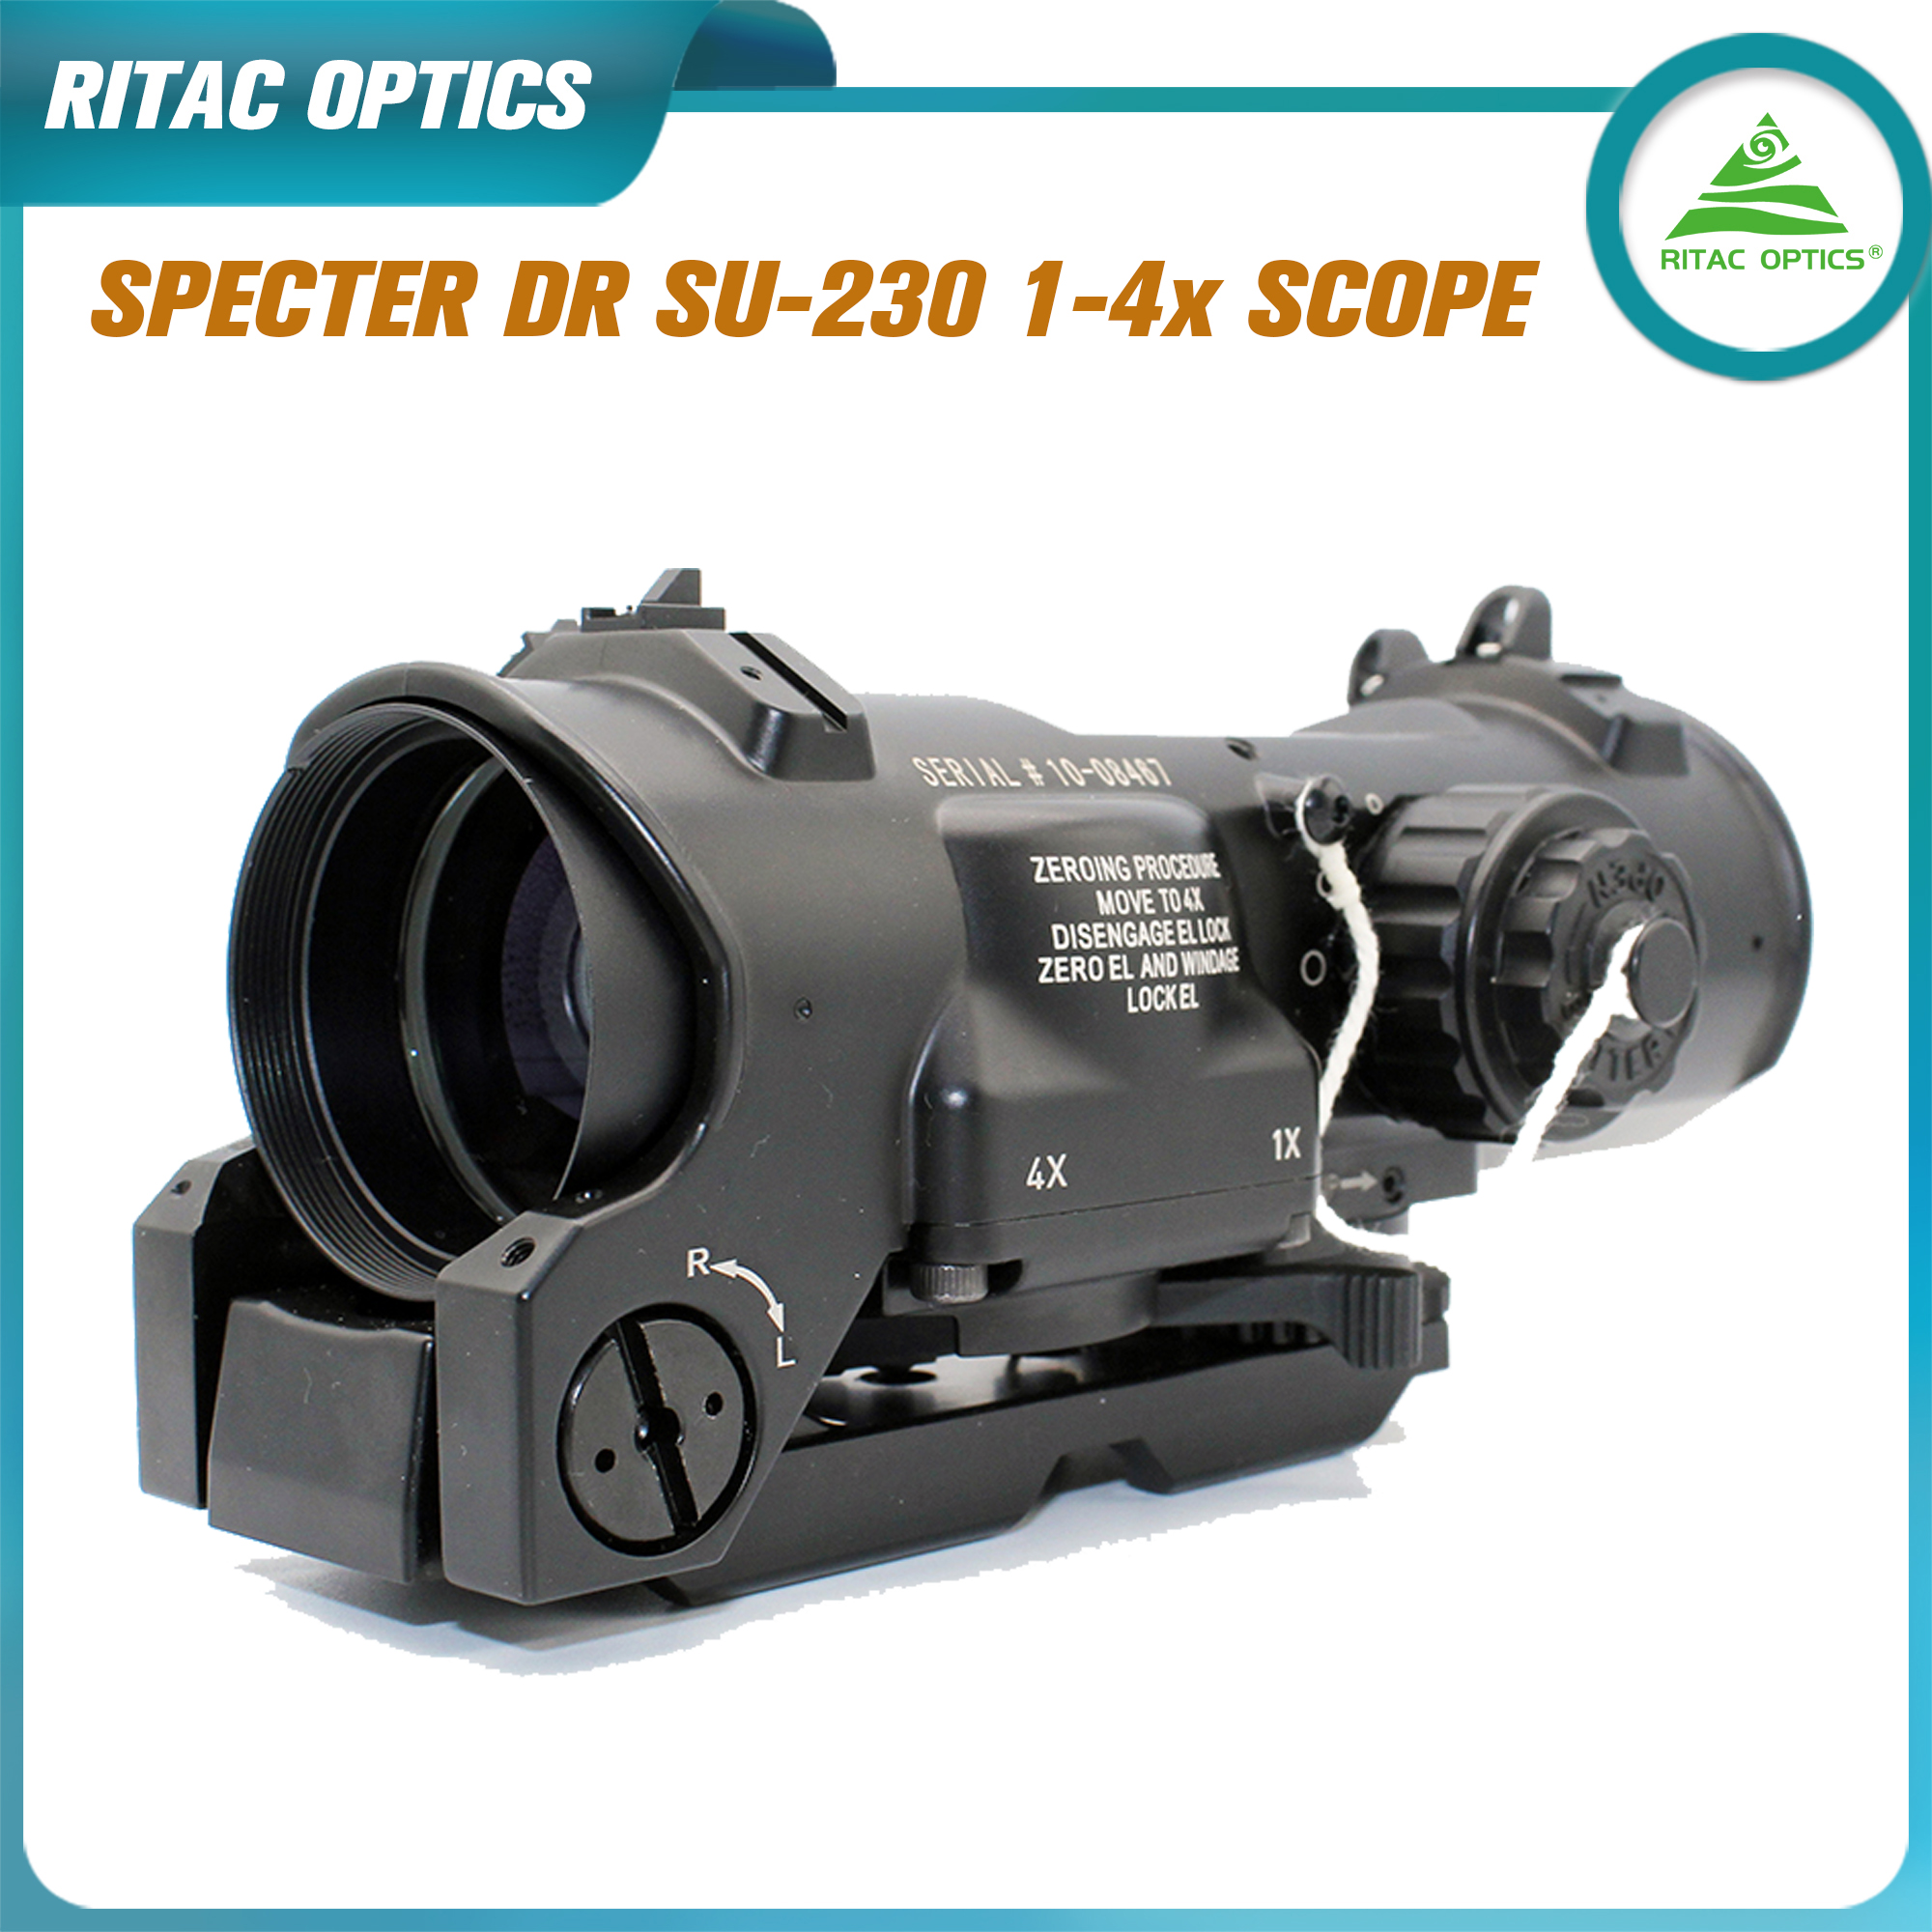 Ritac Optics Elcan Spectre Dr Su-230 Tactique Tactical Rifle Scope 1x-4x Double objectif Fixe Scope Red Red Red Dot Sight pour la chasse au fusil avec des couvercles en caoutchouc